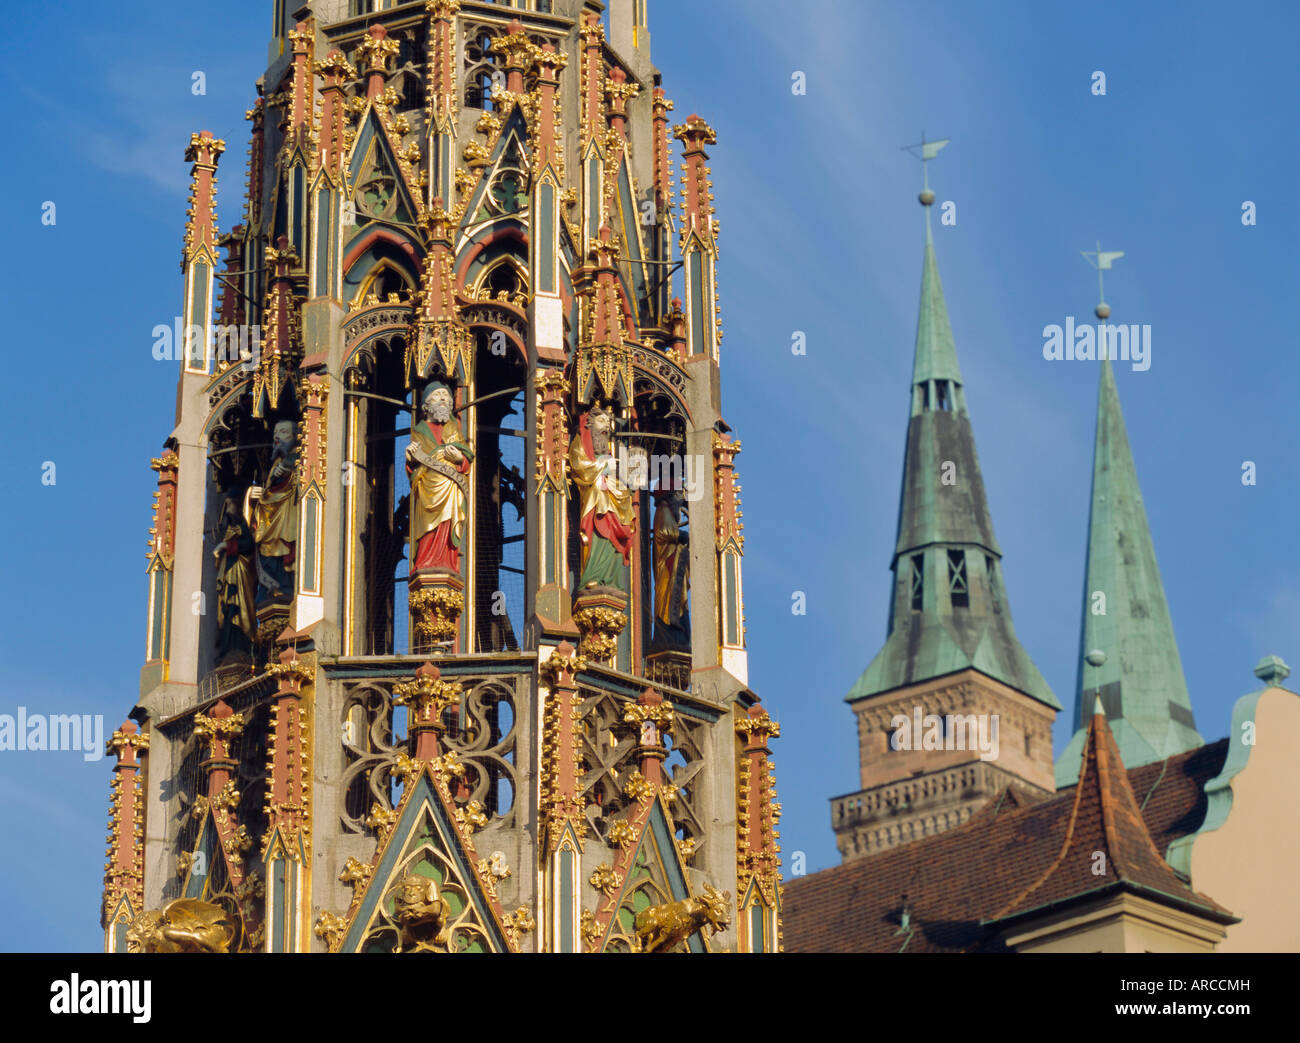 Schöner Brunnen und Kirche St. Sebaldus, Nürnberg, Bayern, Deutschland, Europa Stockfoto